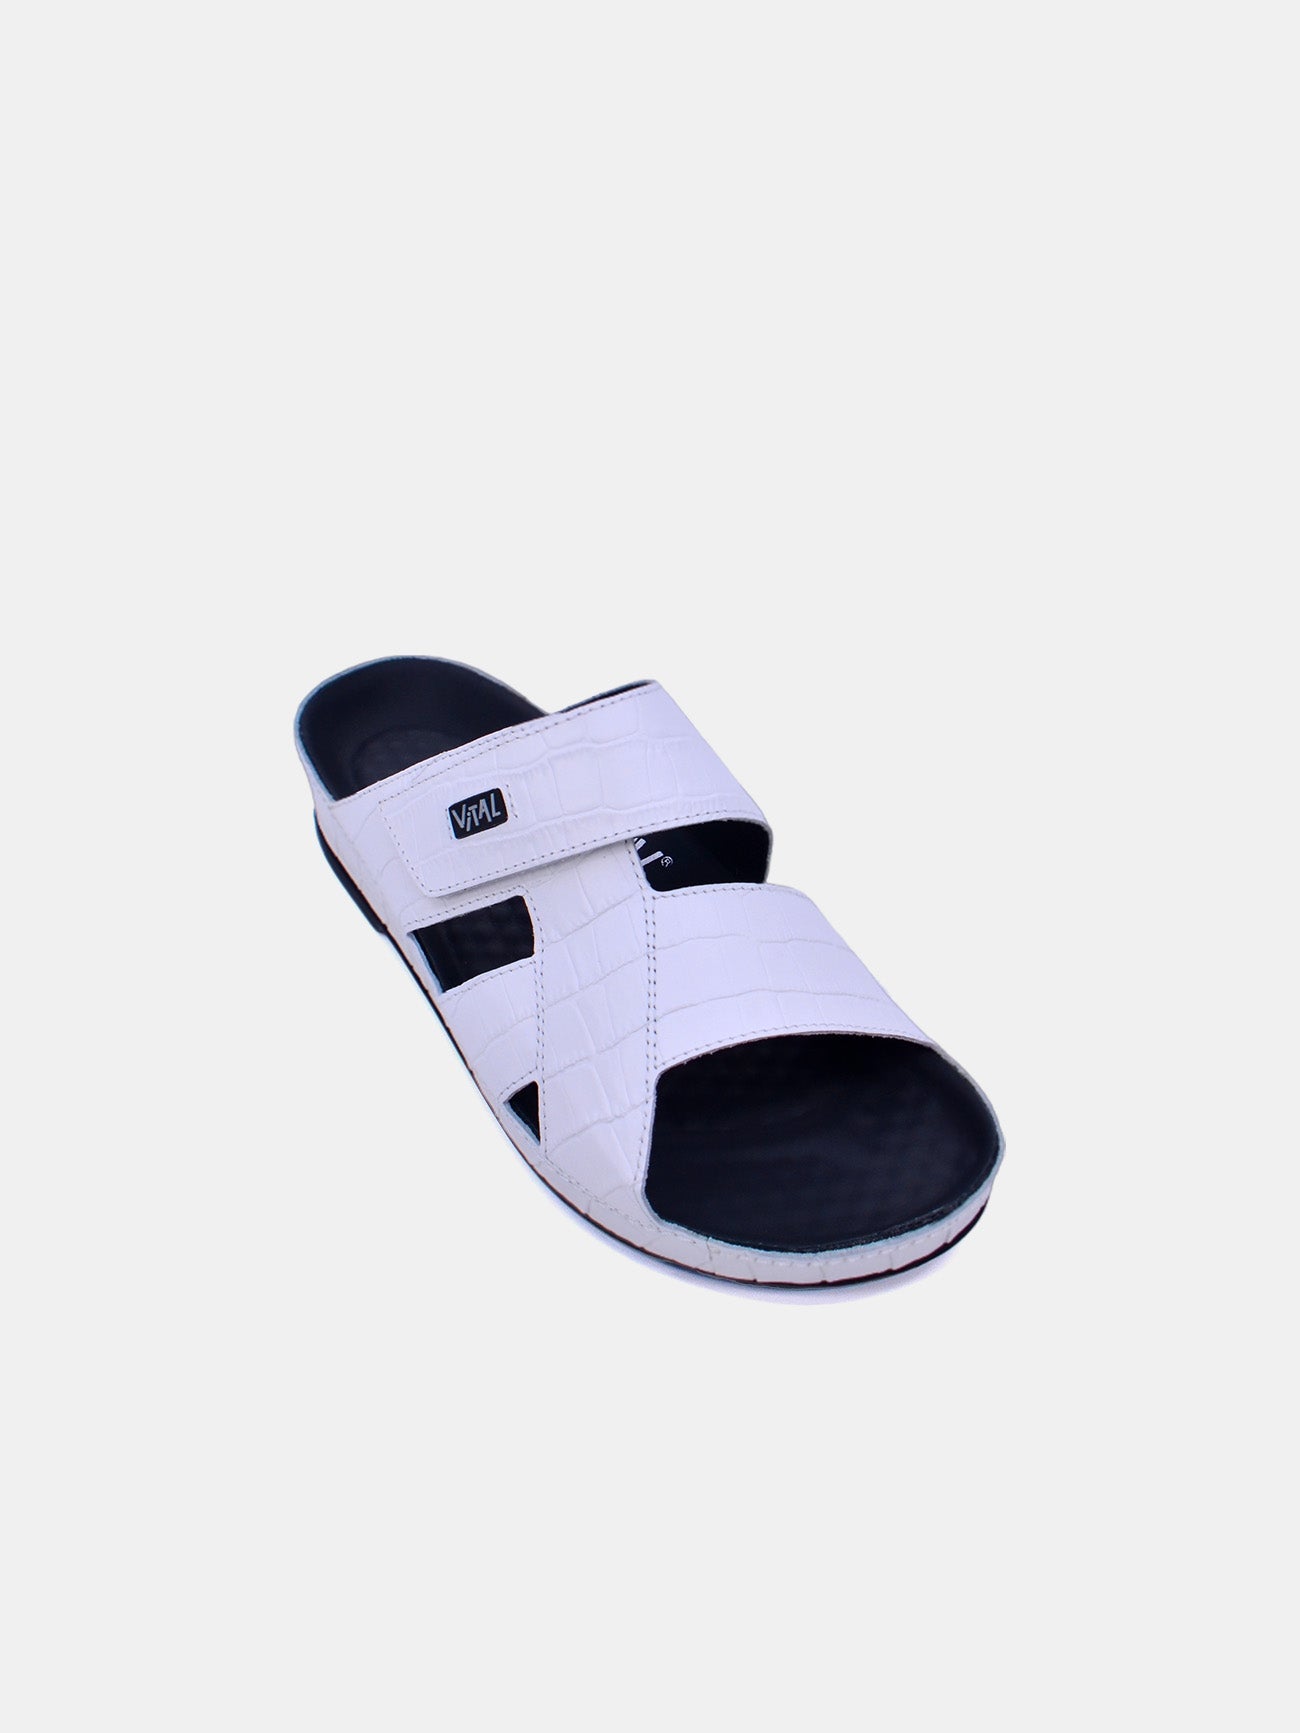 Vital 74004S Men's Slider Sandals #color_White